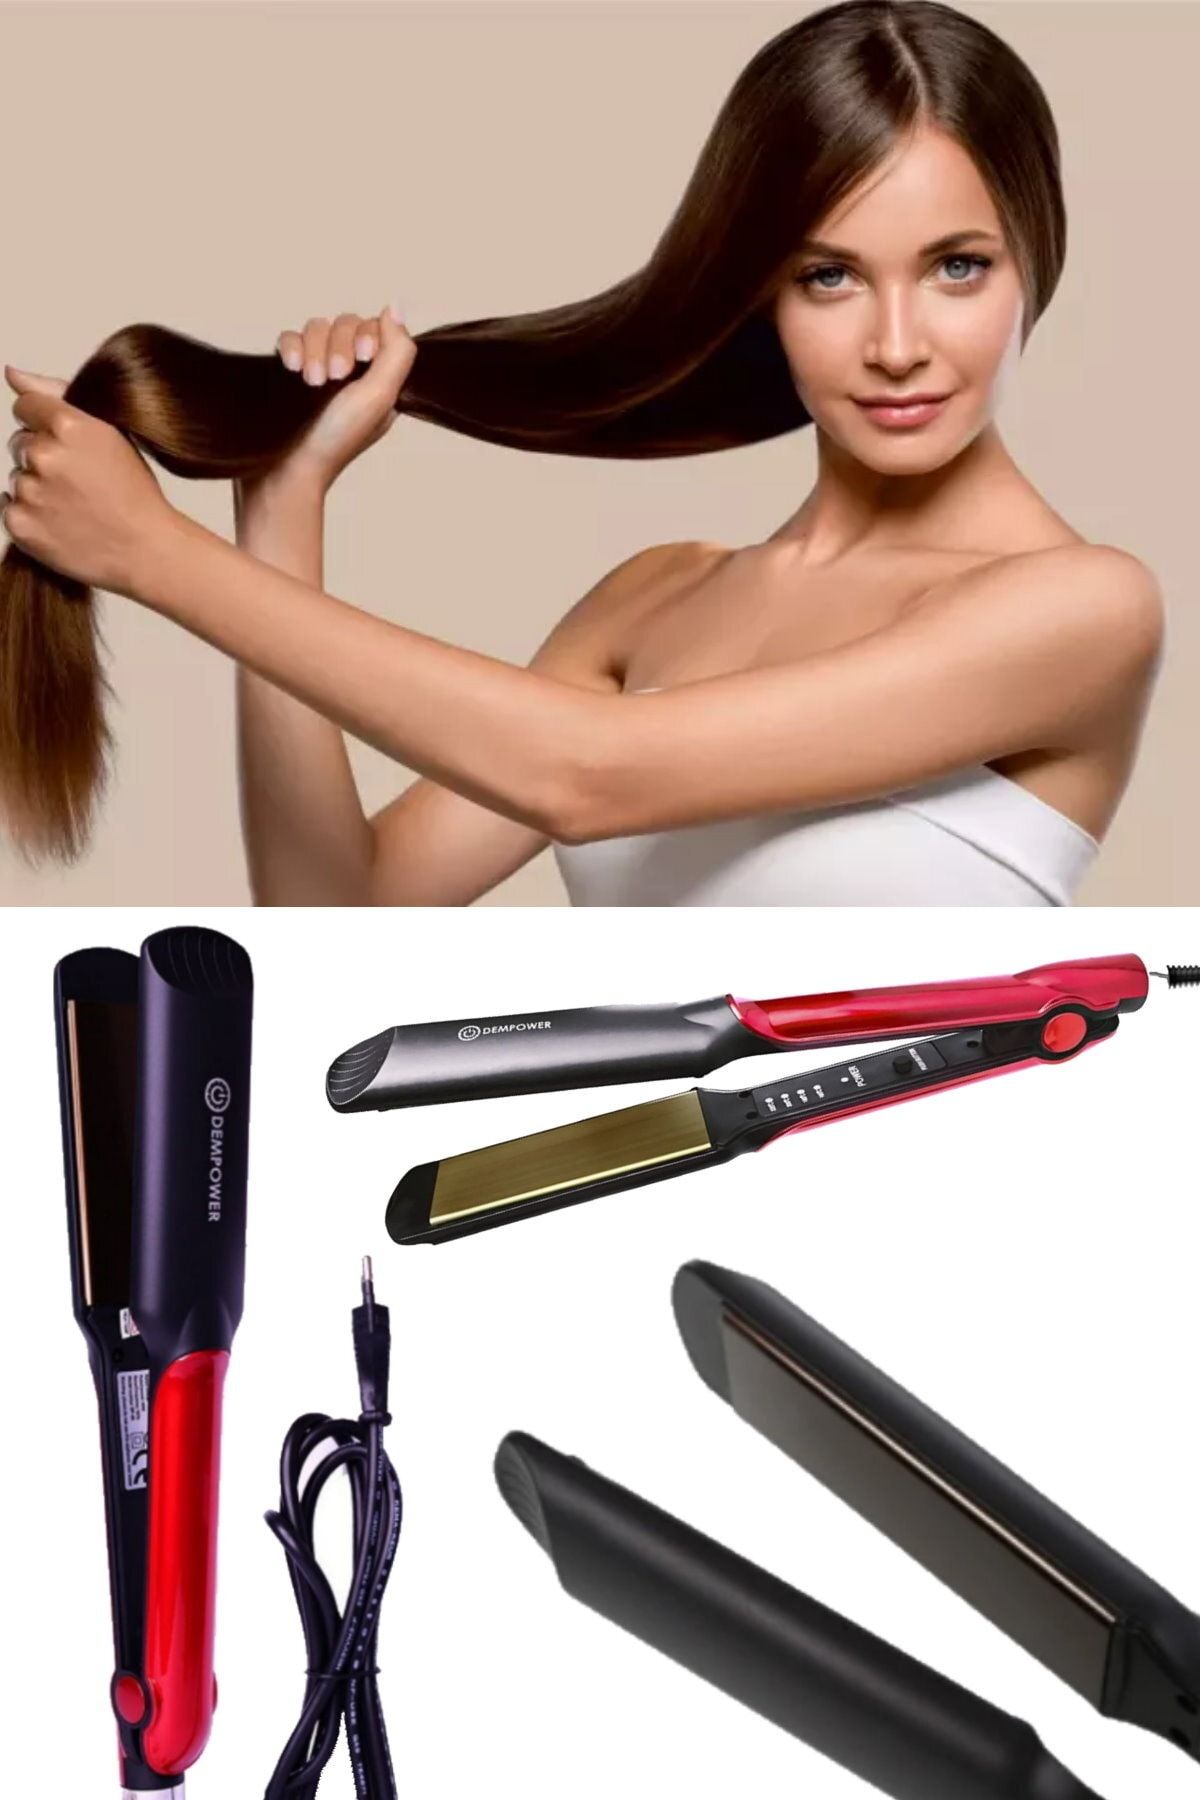 Utelips Profesyonel Saç Düzleştirici Kıvırıcı Saç Düz Demir Saç Düzleştirme Kıvırma 4 Kademeli 220 Decere